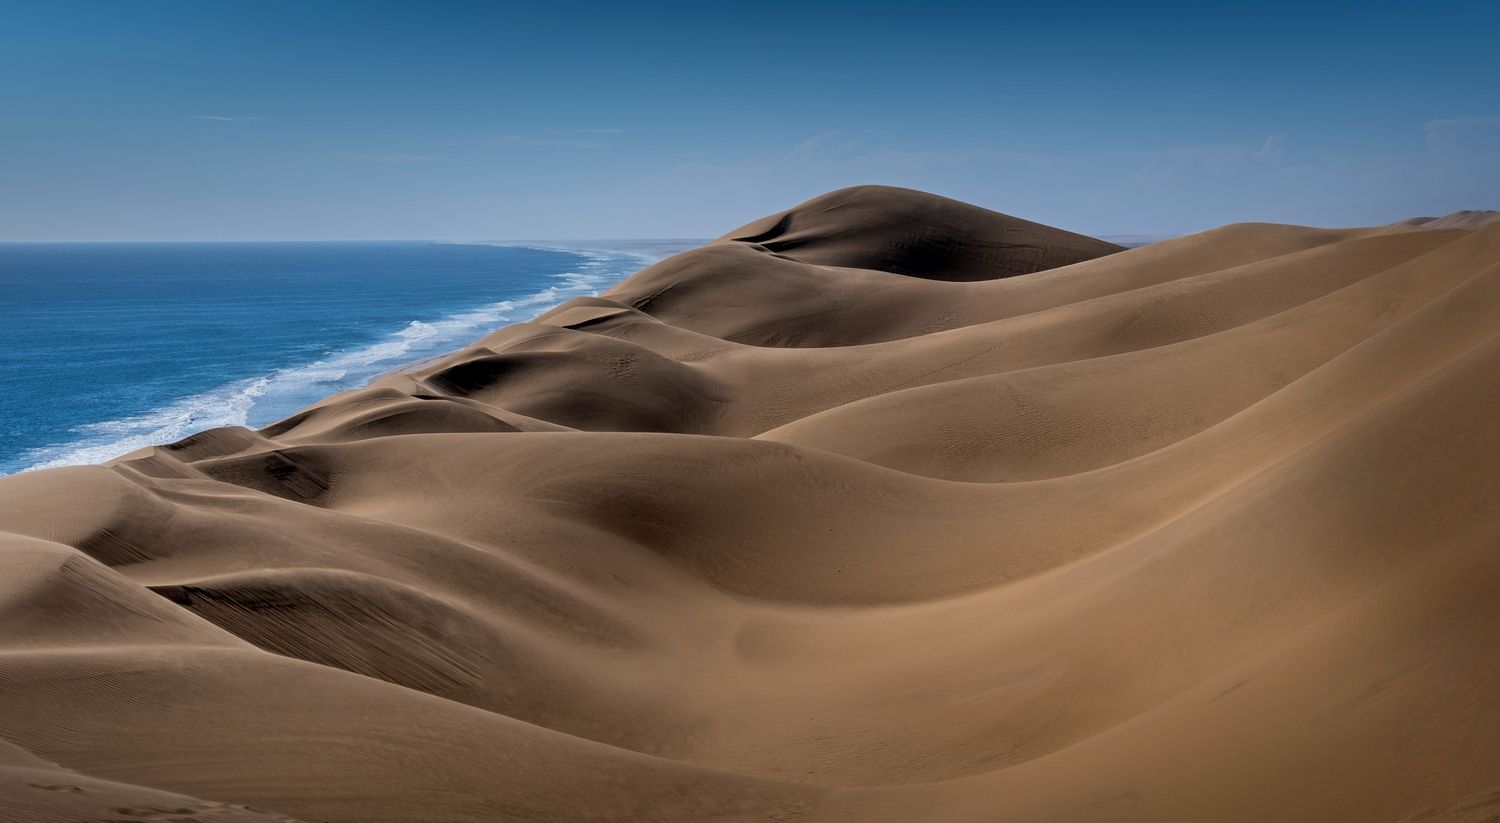 намибия, дюны, песок, намиб, бархан, dunes, sand, namib, desert, dune, пустыня, природа, намибия нд, нд, africa, африка, Демкина Надежда